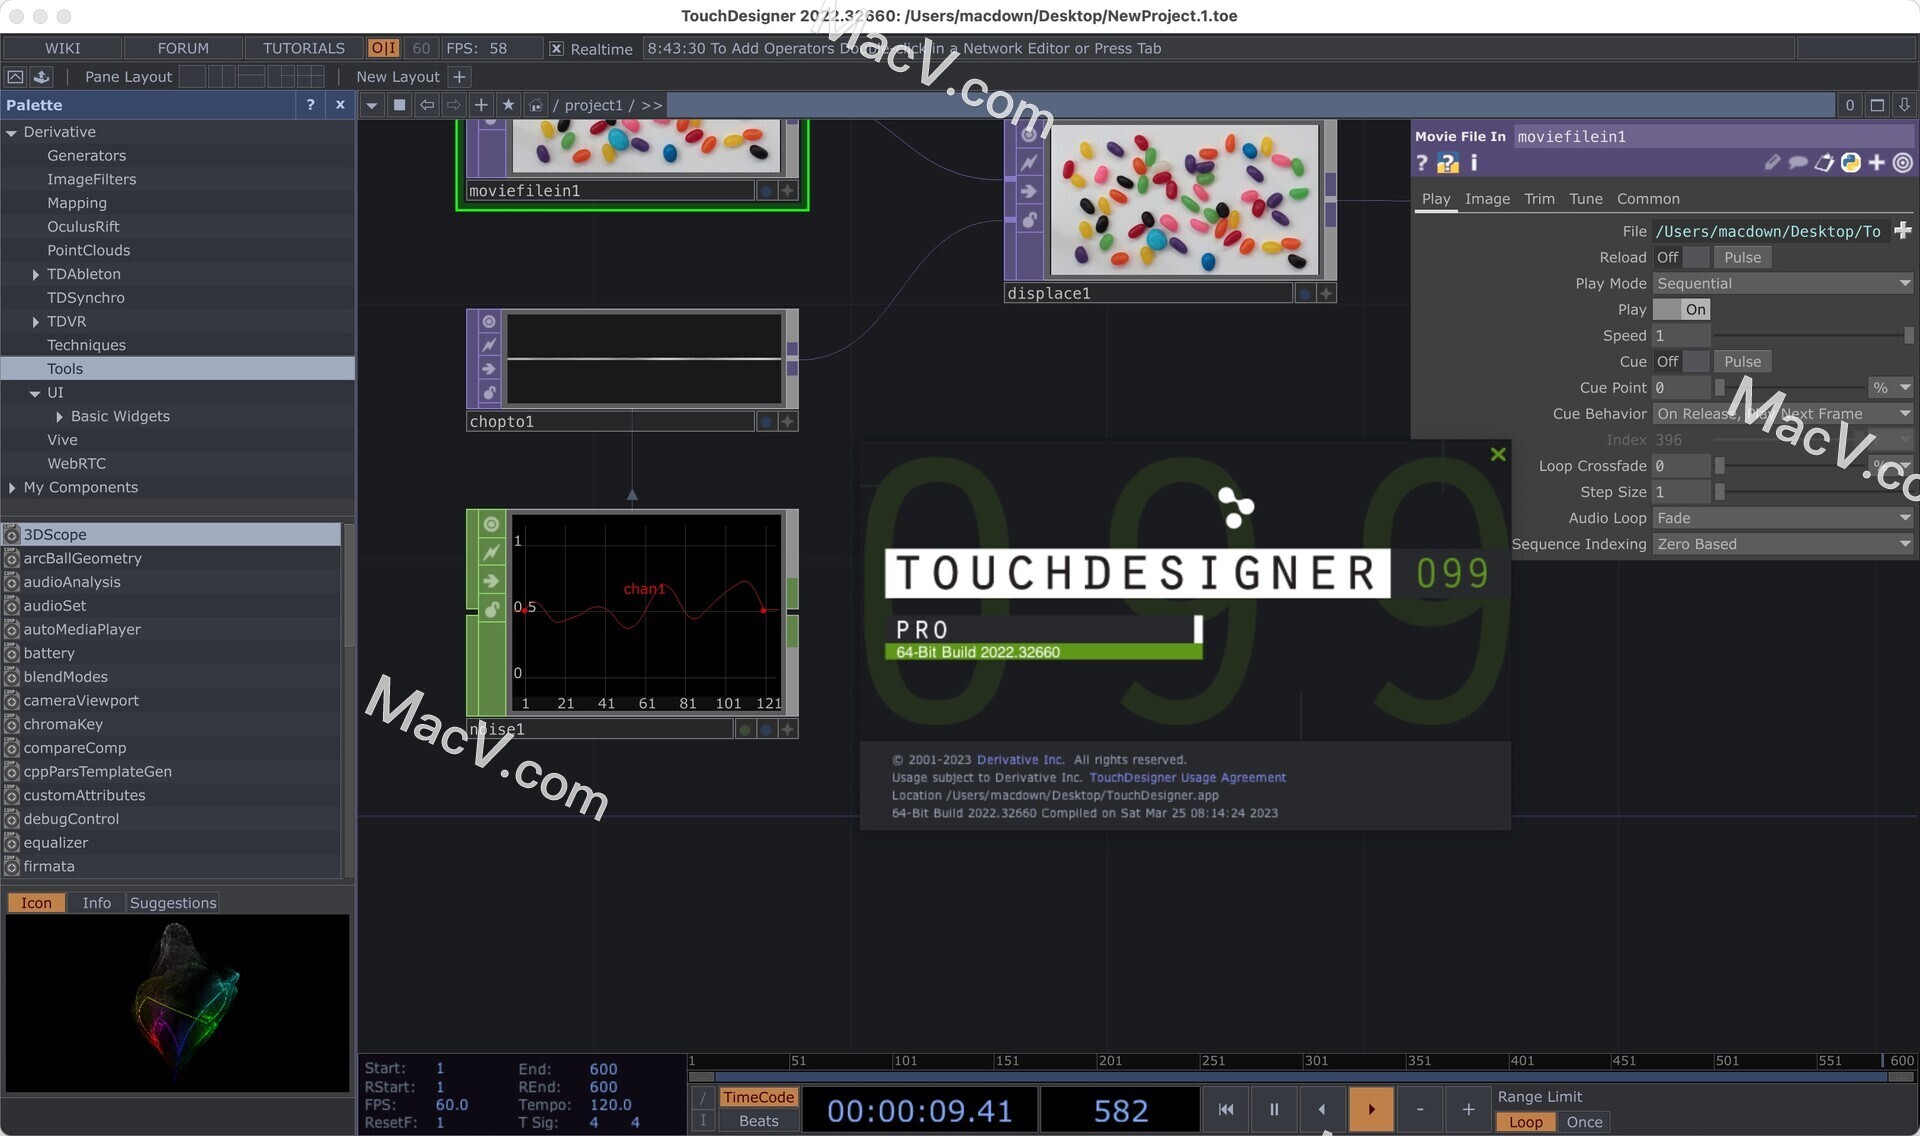 TouchDesigner Pro 099 Mac破解版,可视化原型设计渲染工具